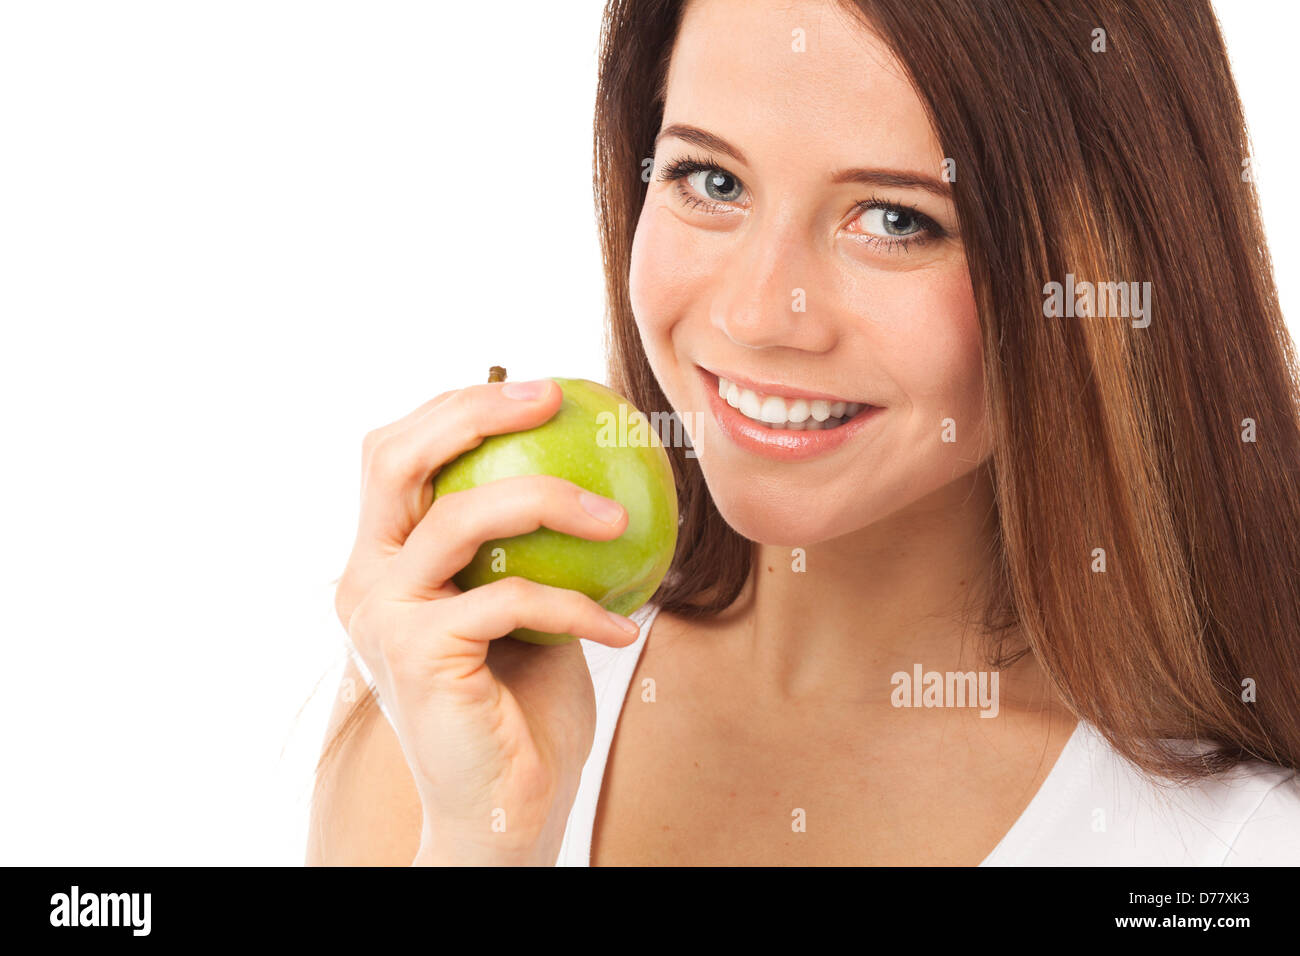 Piuttosto giovane donna di mangiare una mela verde, isolato su bianco Foto Stock